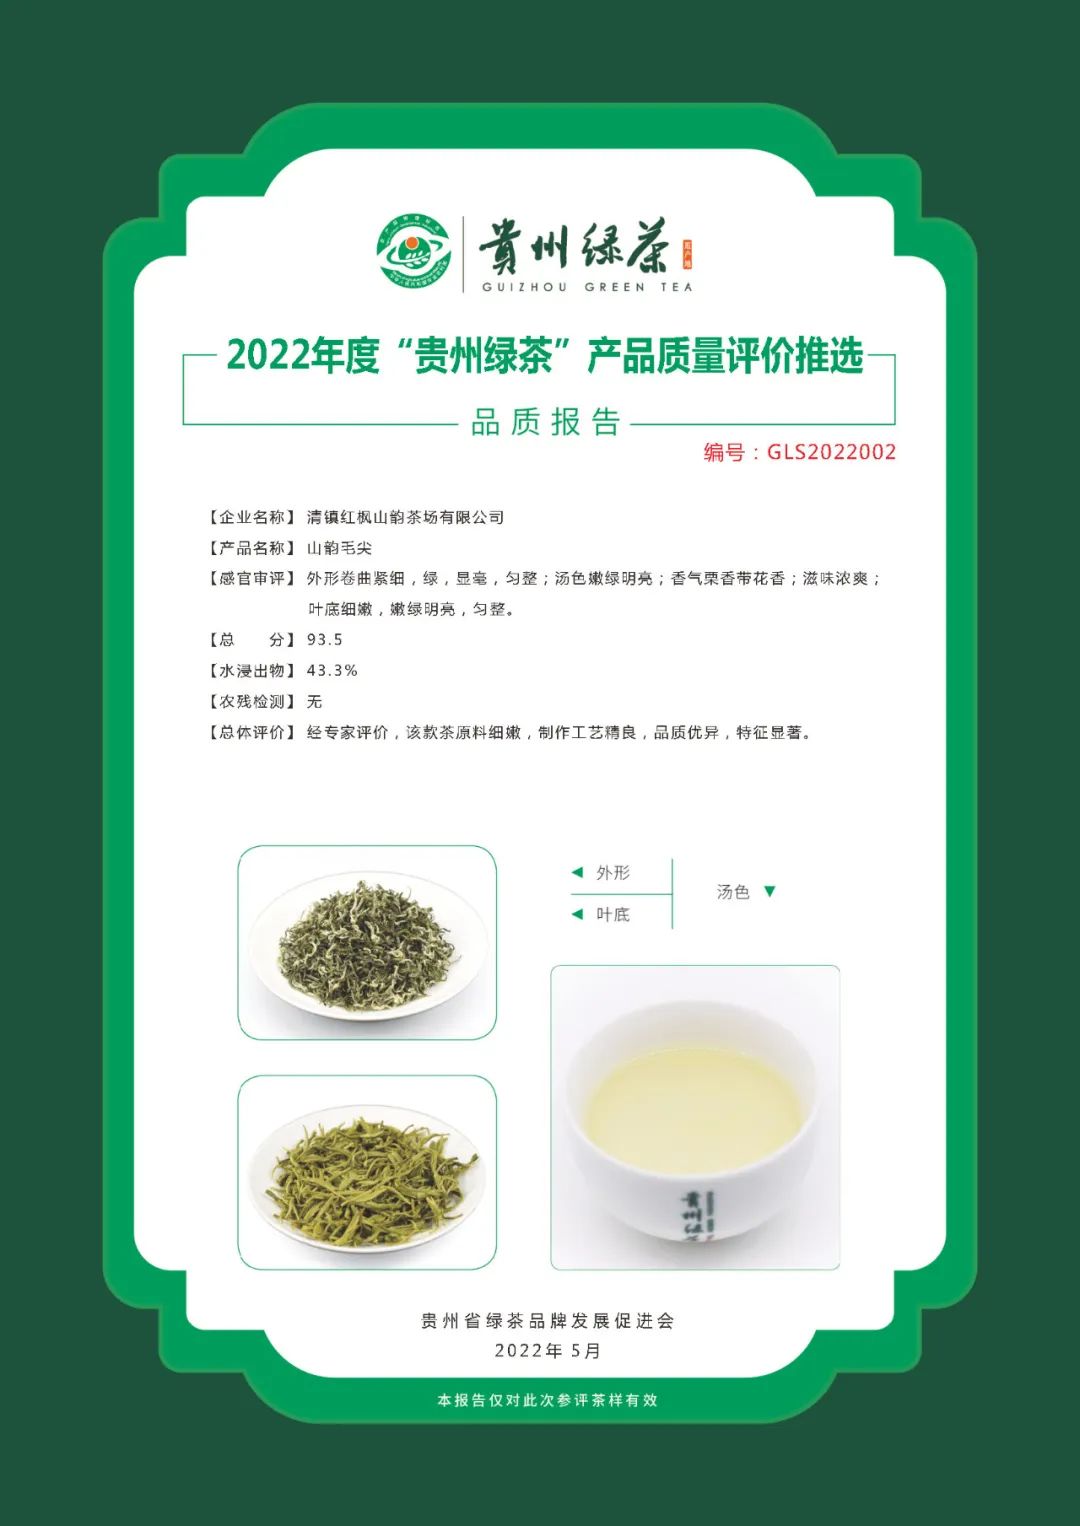 2022年“贵州绿茶”品质报告丨清镇红枫山韵茶场有限公司